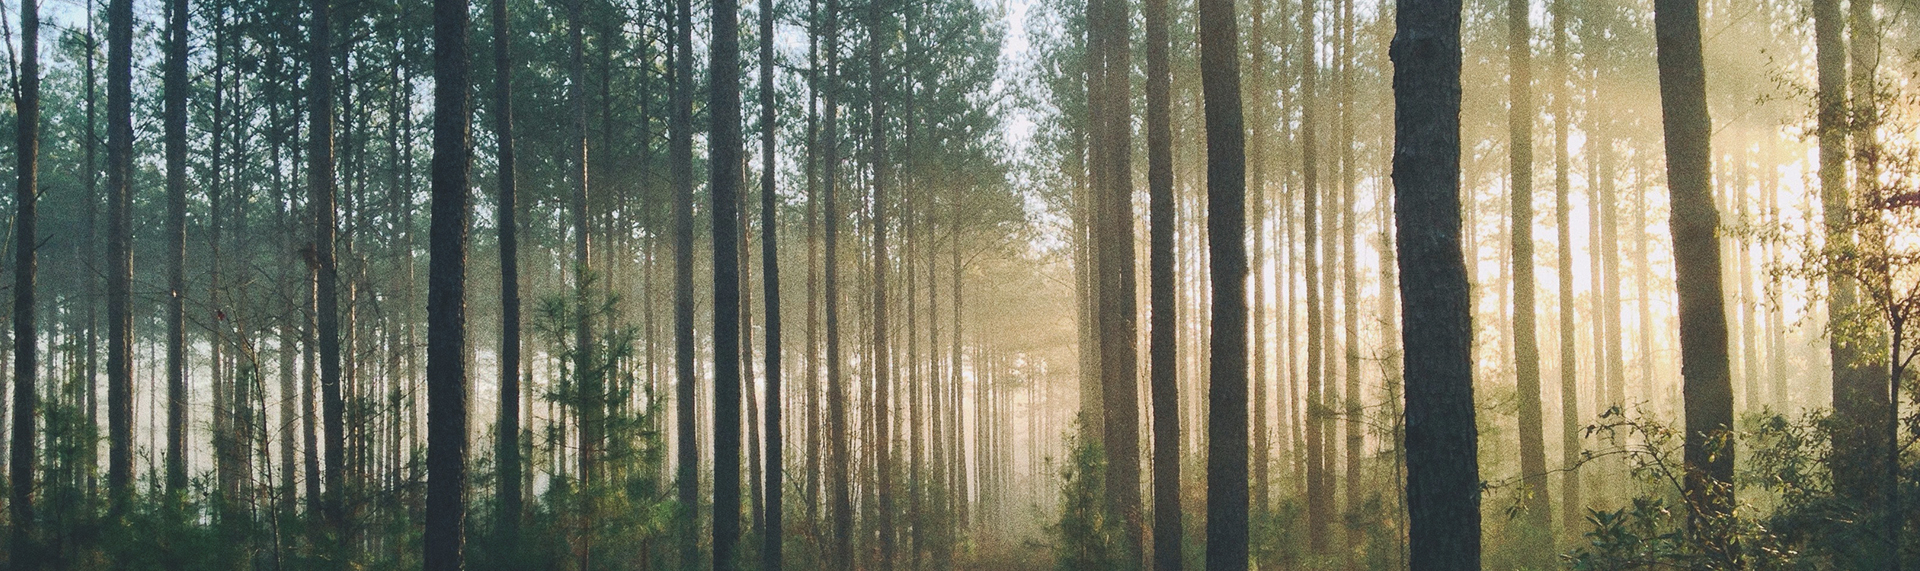 solljus i skogsglänta